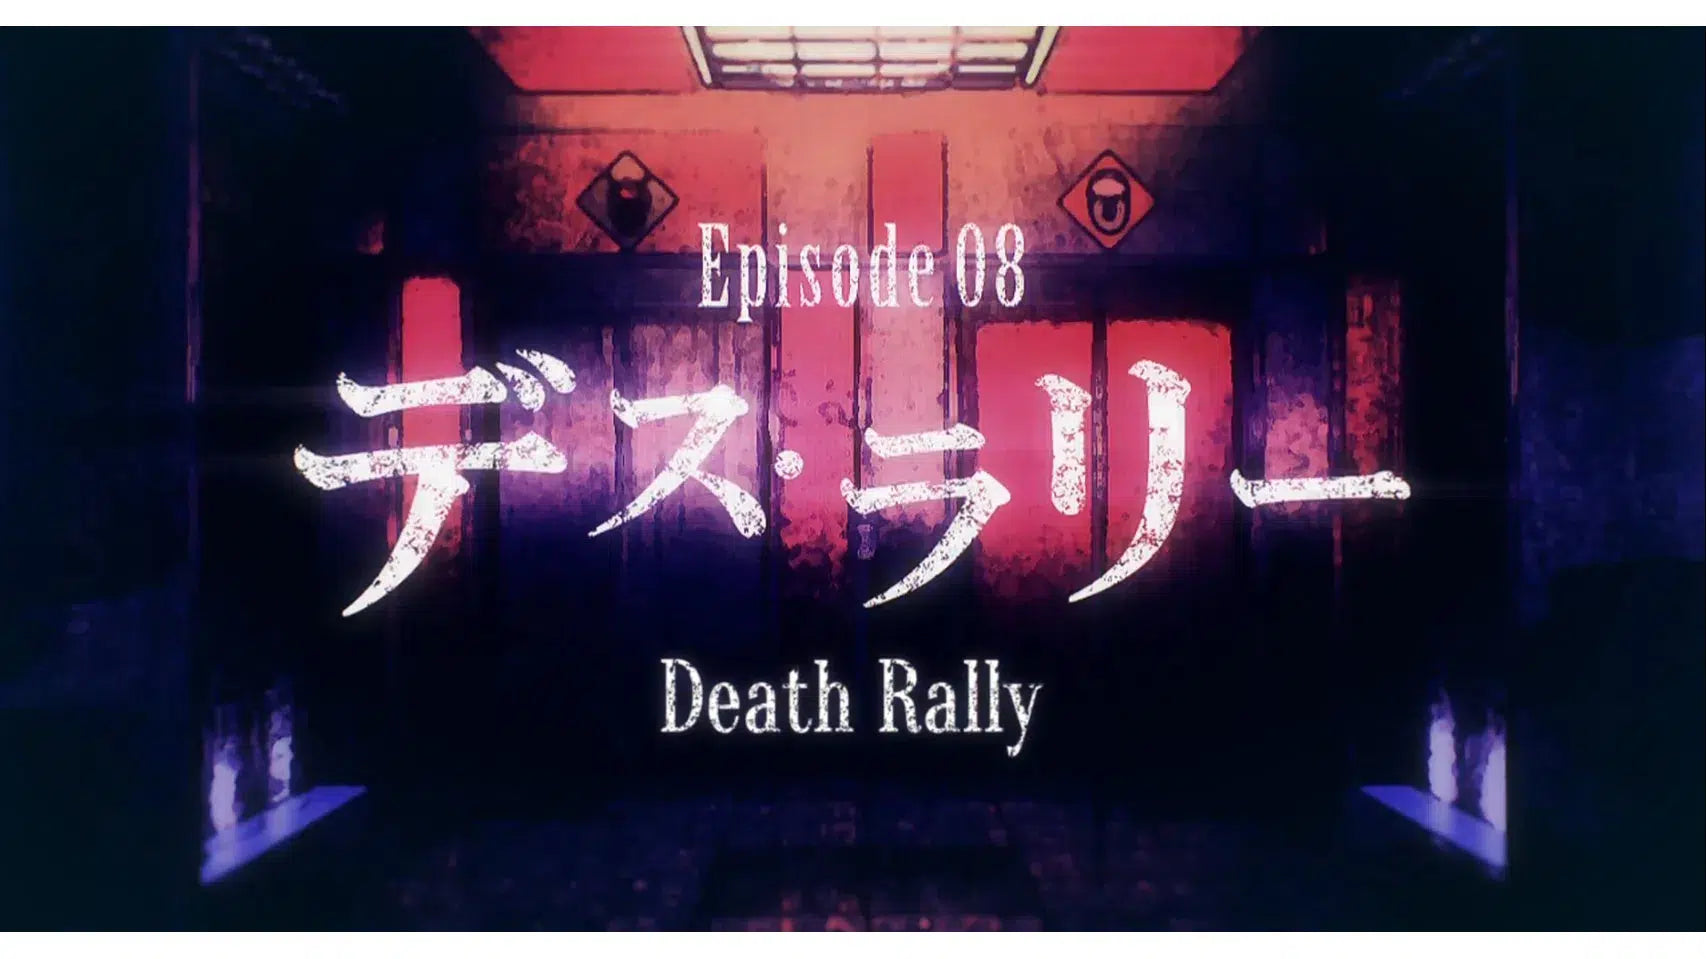 Death Parade Episode 08 Death Rally